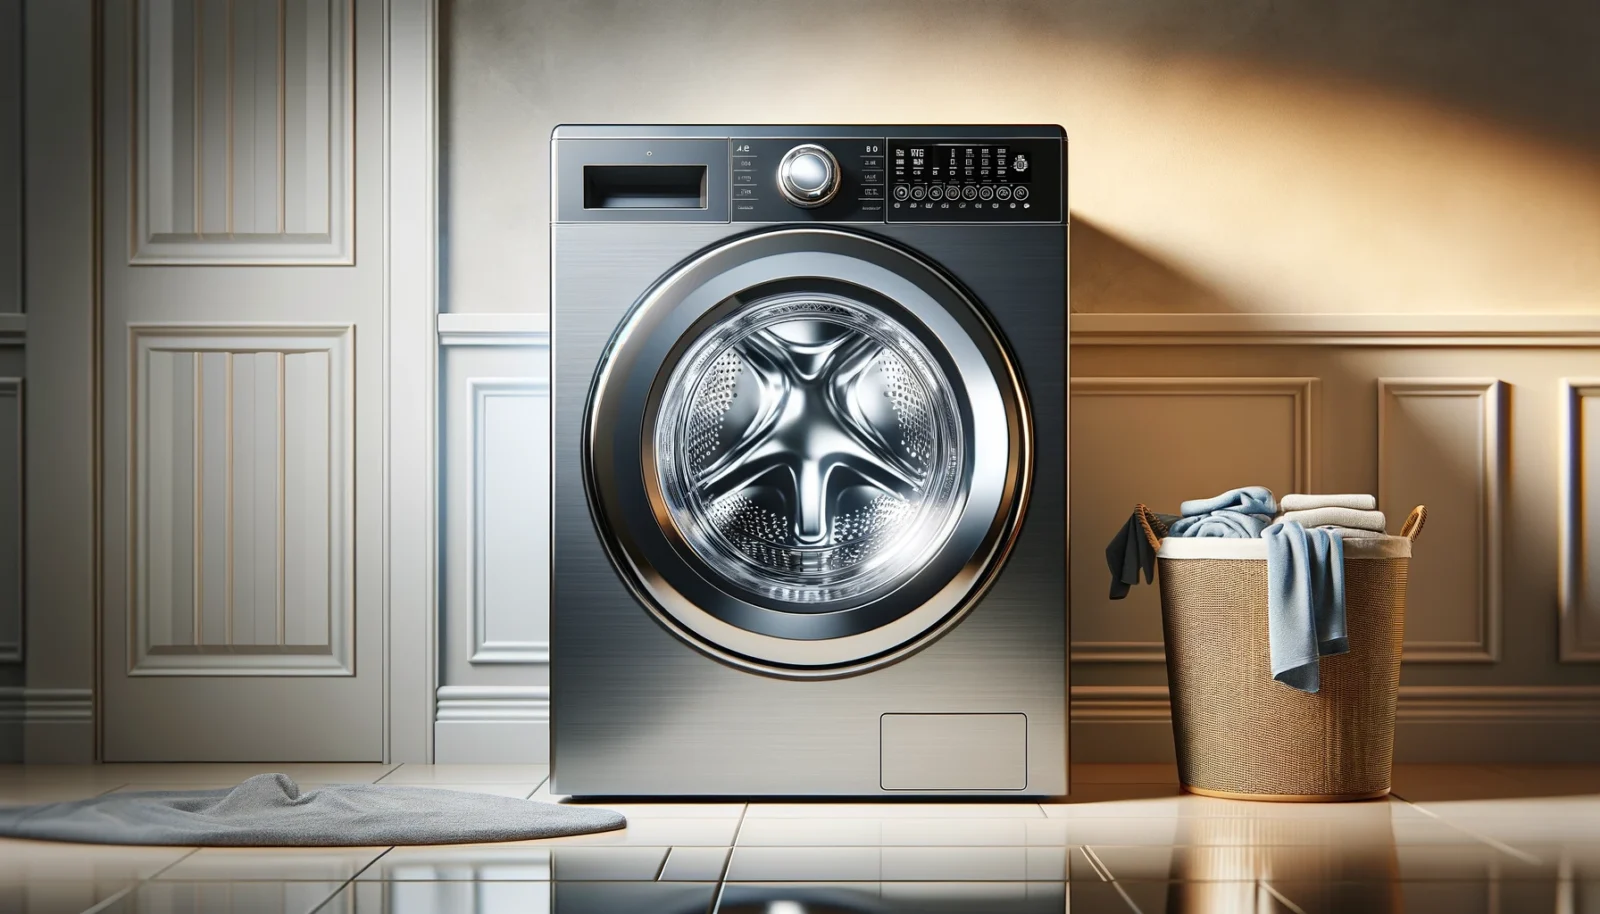 Na zdjęciu widoczna jest nowoczesna pralka umieszczona w eleganckim pomieszczeniu, prawdopodobnie w pralni. Pralka jest koloru srebrnego z przezroczystymi drzwiami i panel sterowania na górze. Z prawej strony pralki znajduje się ciemnozłoty kosz na pranie, w którym leżą złożone i poukładane, głównie błękitne ręczniki oraz wiszące nie